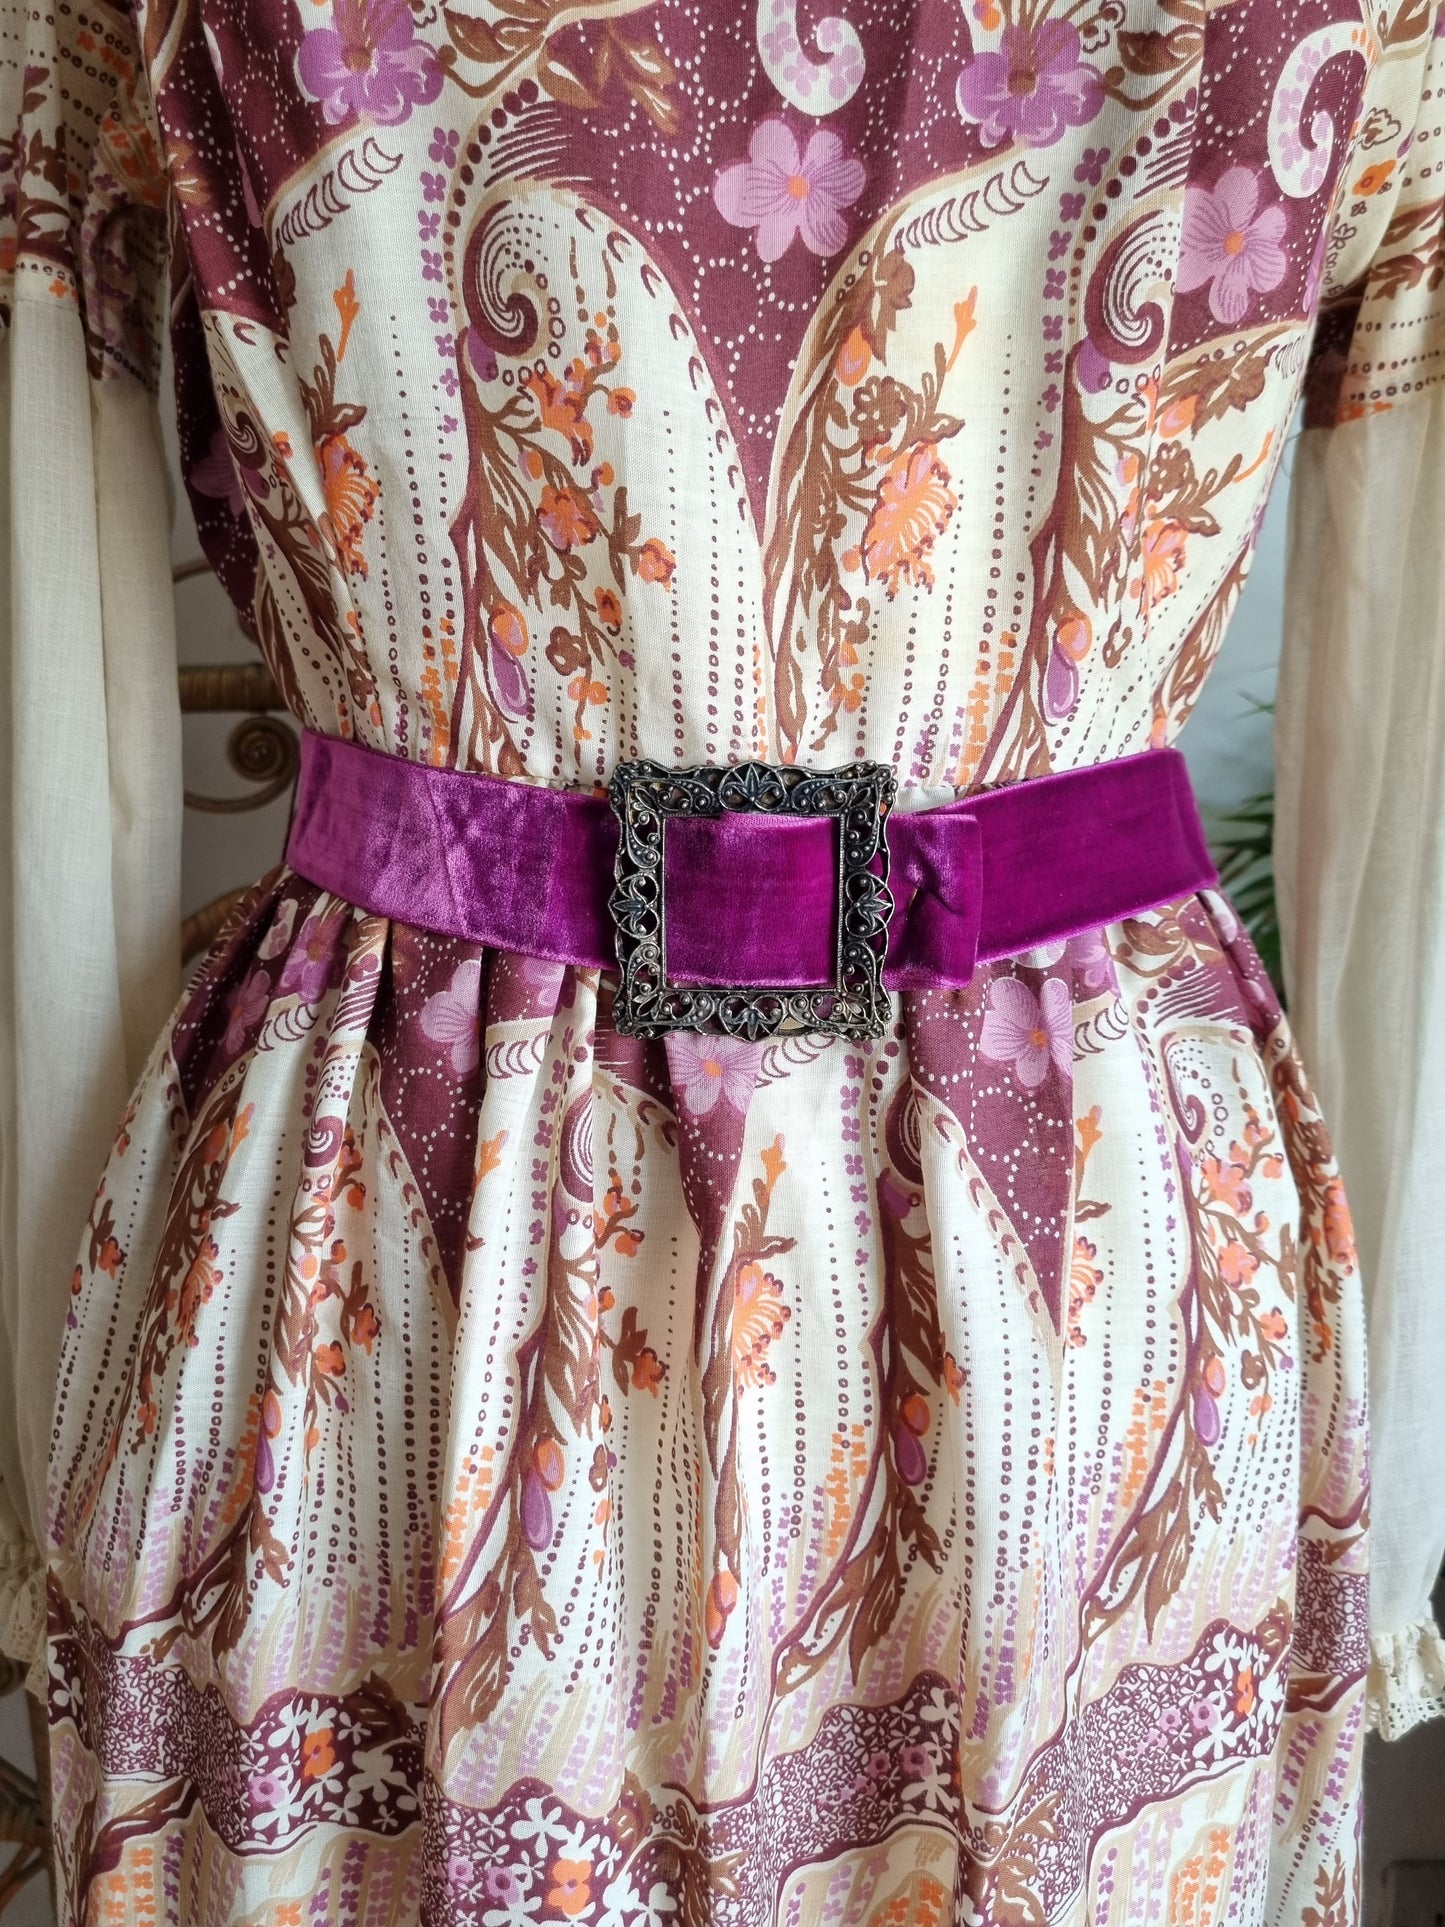 Vintage dollyrockers prairie dress